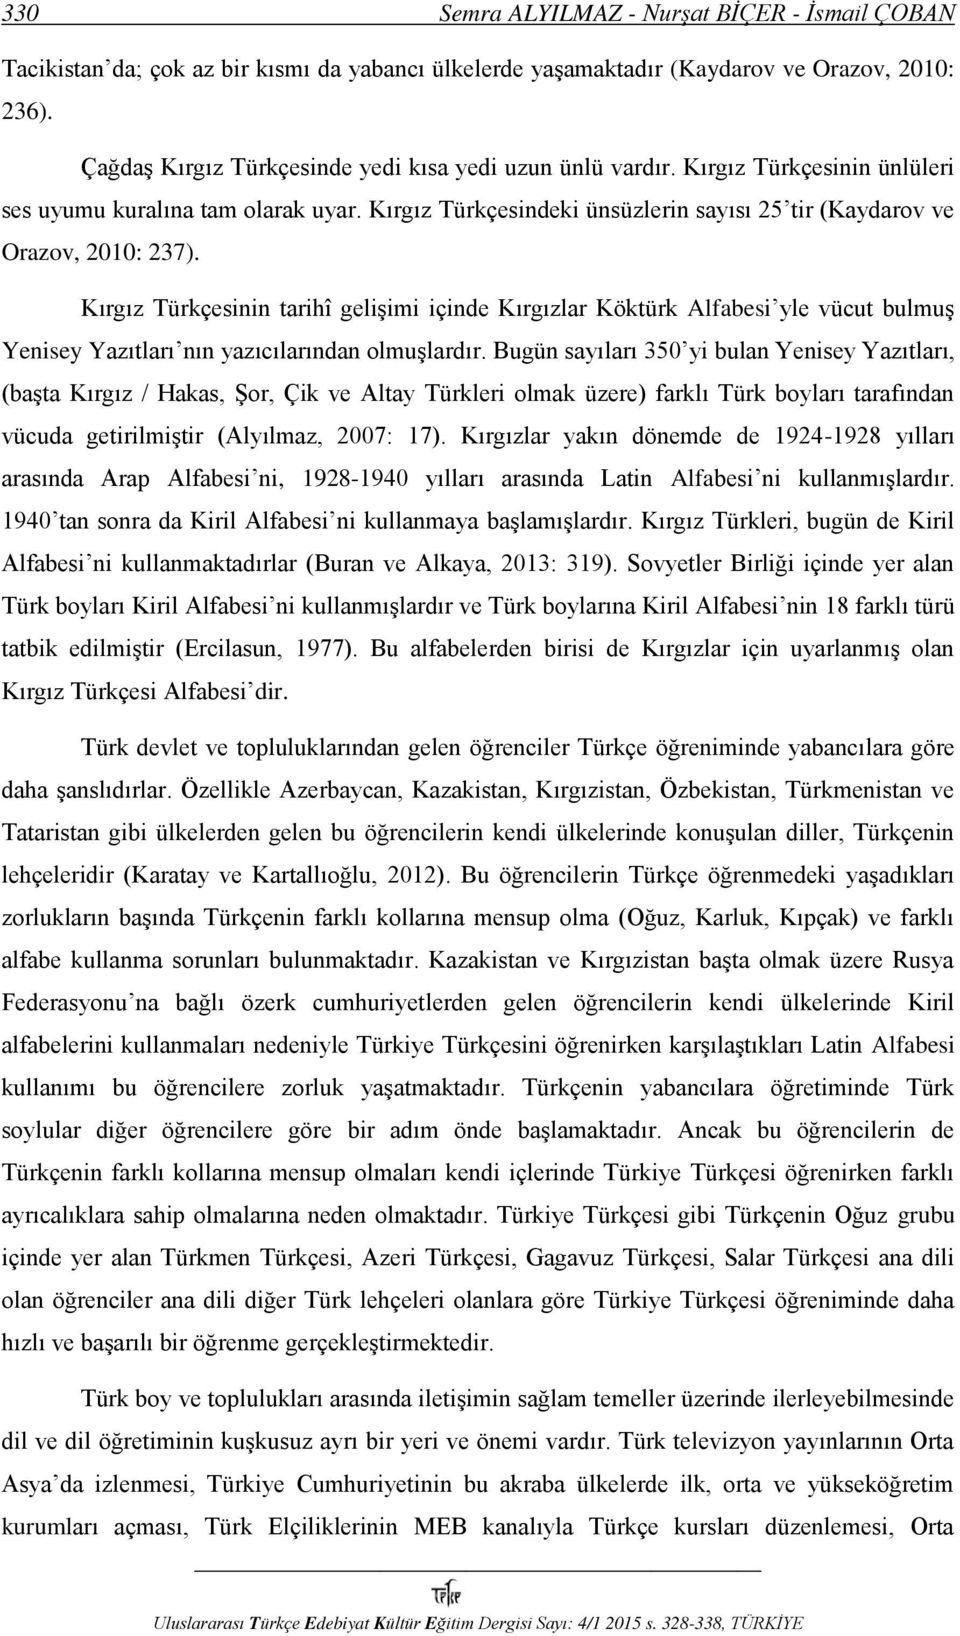 Kırgız Türkçesindeki ünsüzlerin sayısı 25 tir (Kaydarov ve Orazov, 2010: 237).